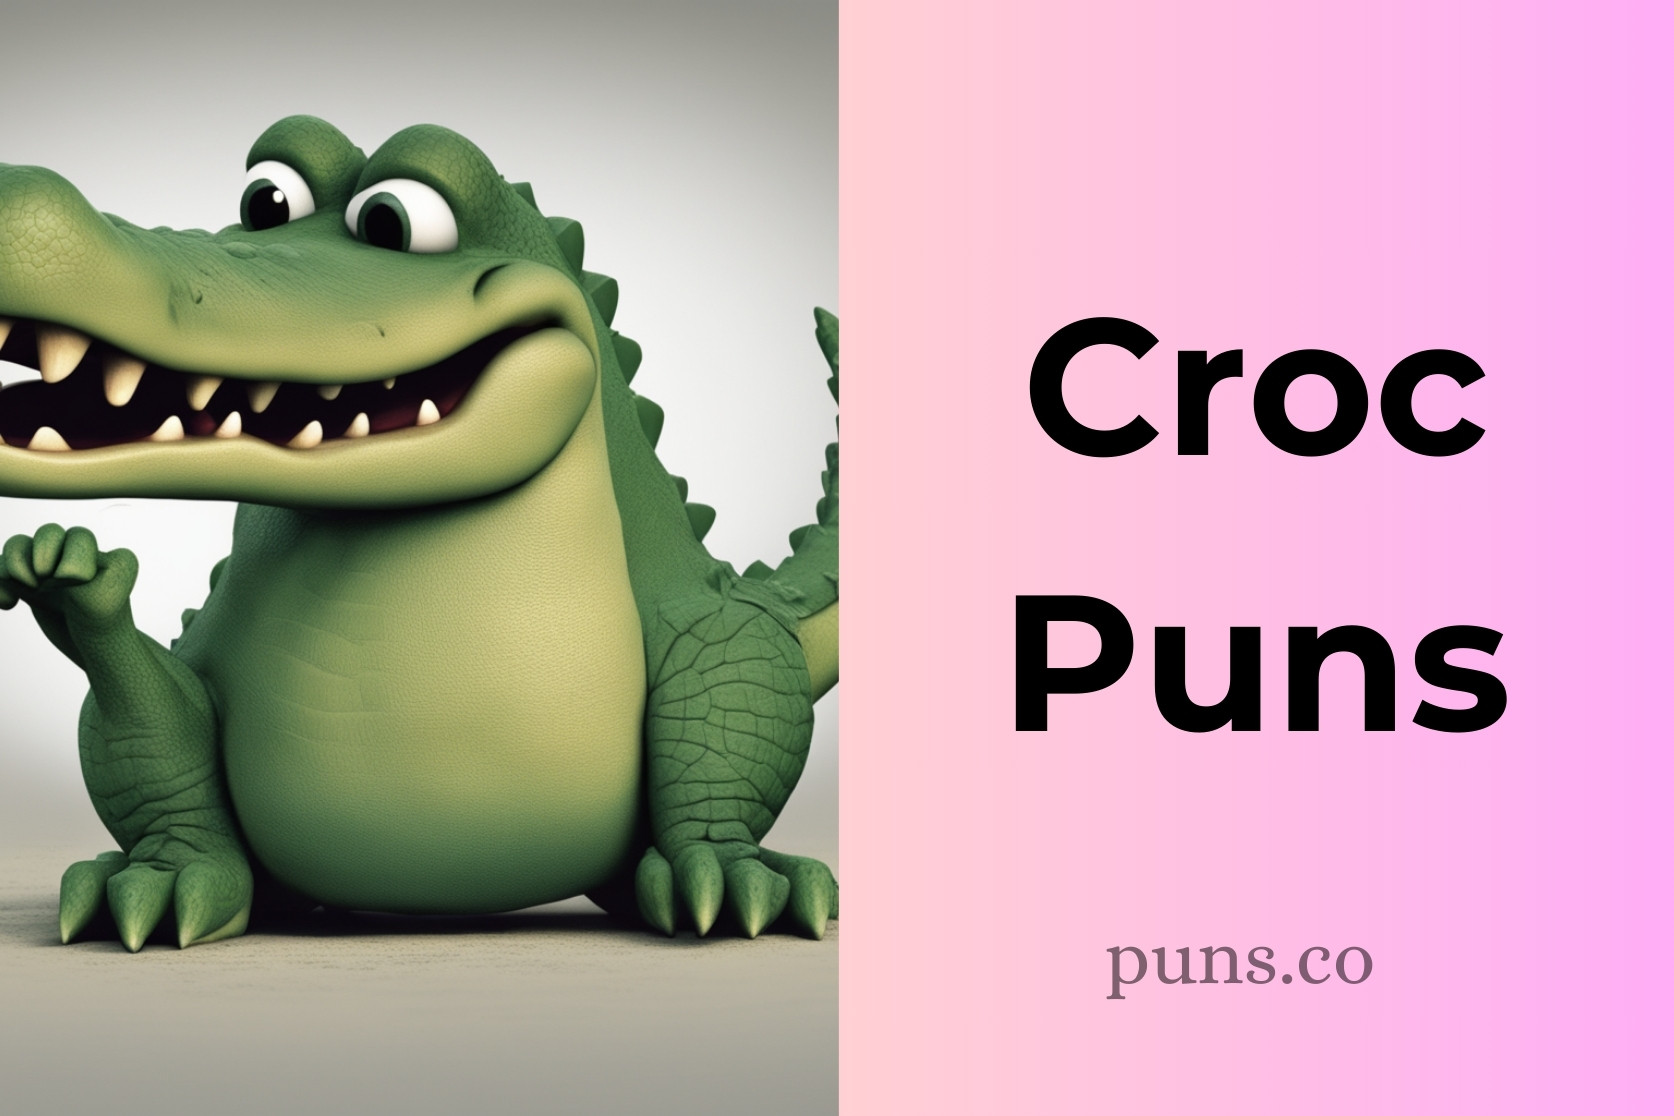 Croc Puns